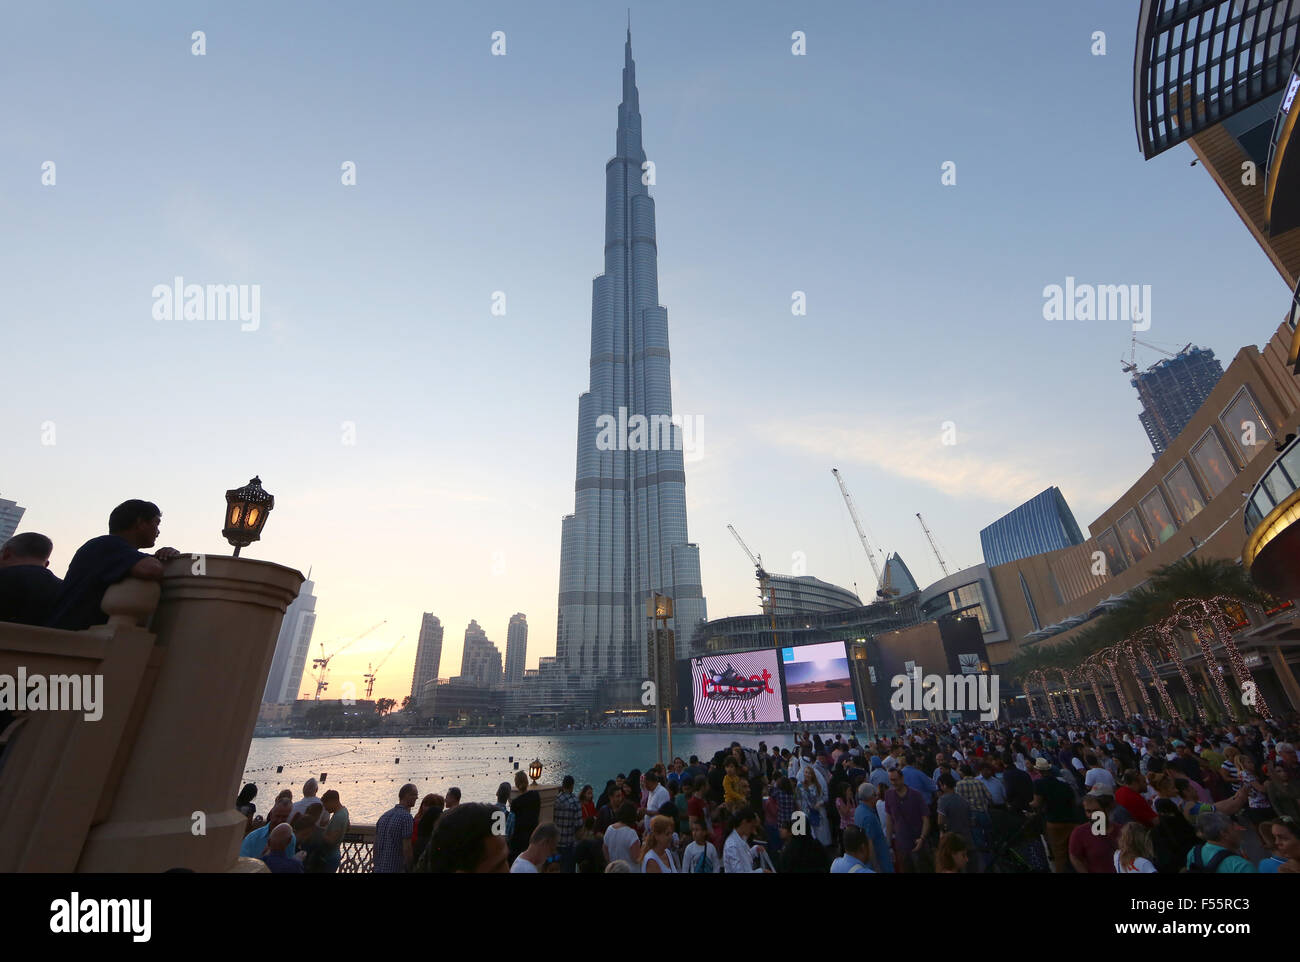 25.03.2015, Dubai, Dubaï, Émirats arabes unis - avec vue sur le Burj Khalifa la nuit. 00S150325D125CAROEX.JPG - pas à vendre dans la région de G E R M A N Y, A U S T R I A, S W I T Z E R L A N D [communiqué de modèle : Non,, des biens : non (c) agence photo caro / http://www.caro-images.pl, info@carofoto.pl Sorge, - en cas d'utilisation de la photo pour les non-fins journalistiques, veuillez contacter l'agence - l'image est l'objet d'image !] Banque D'Images